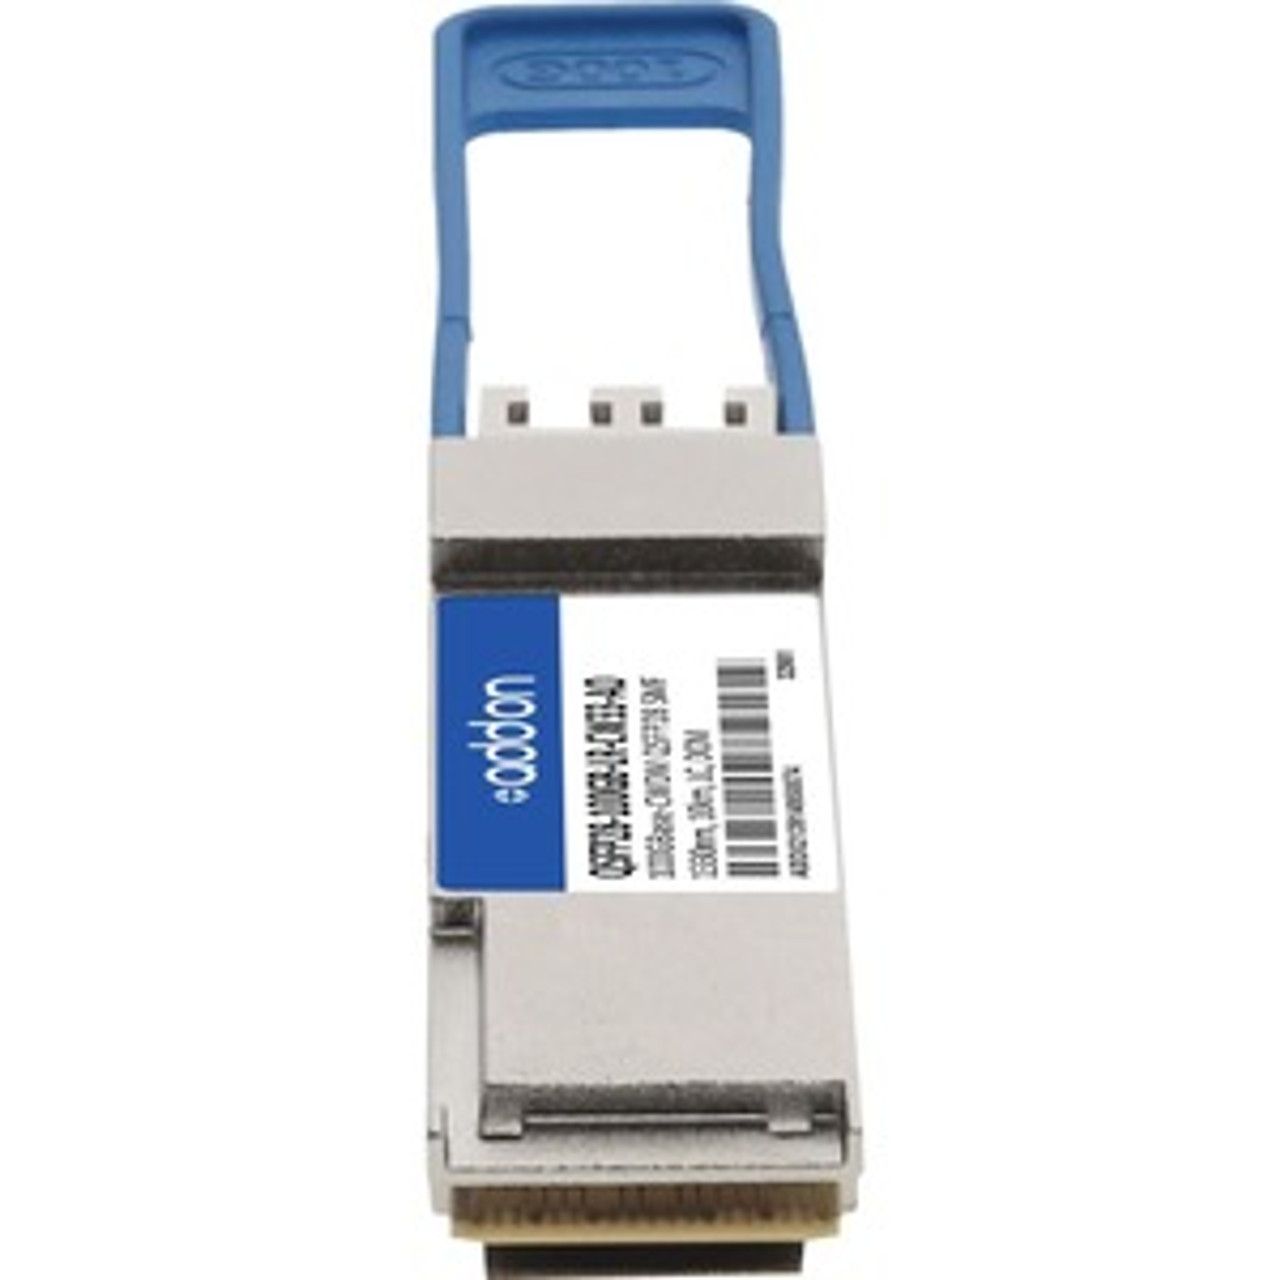 QSFP28-100GB-LR-CW33-AO